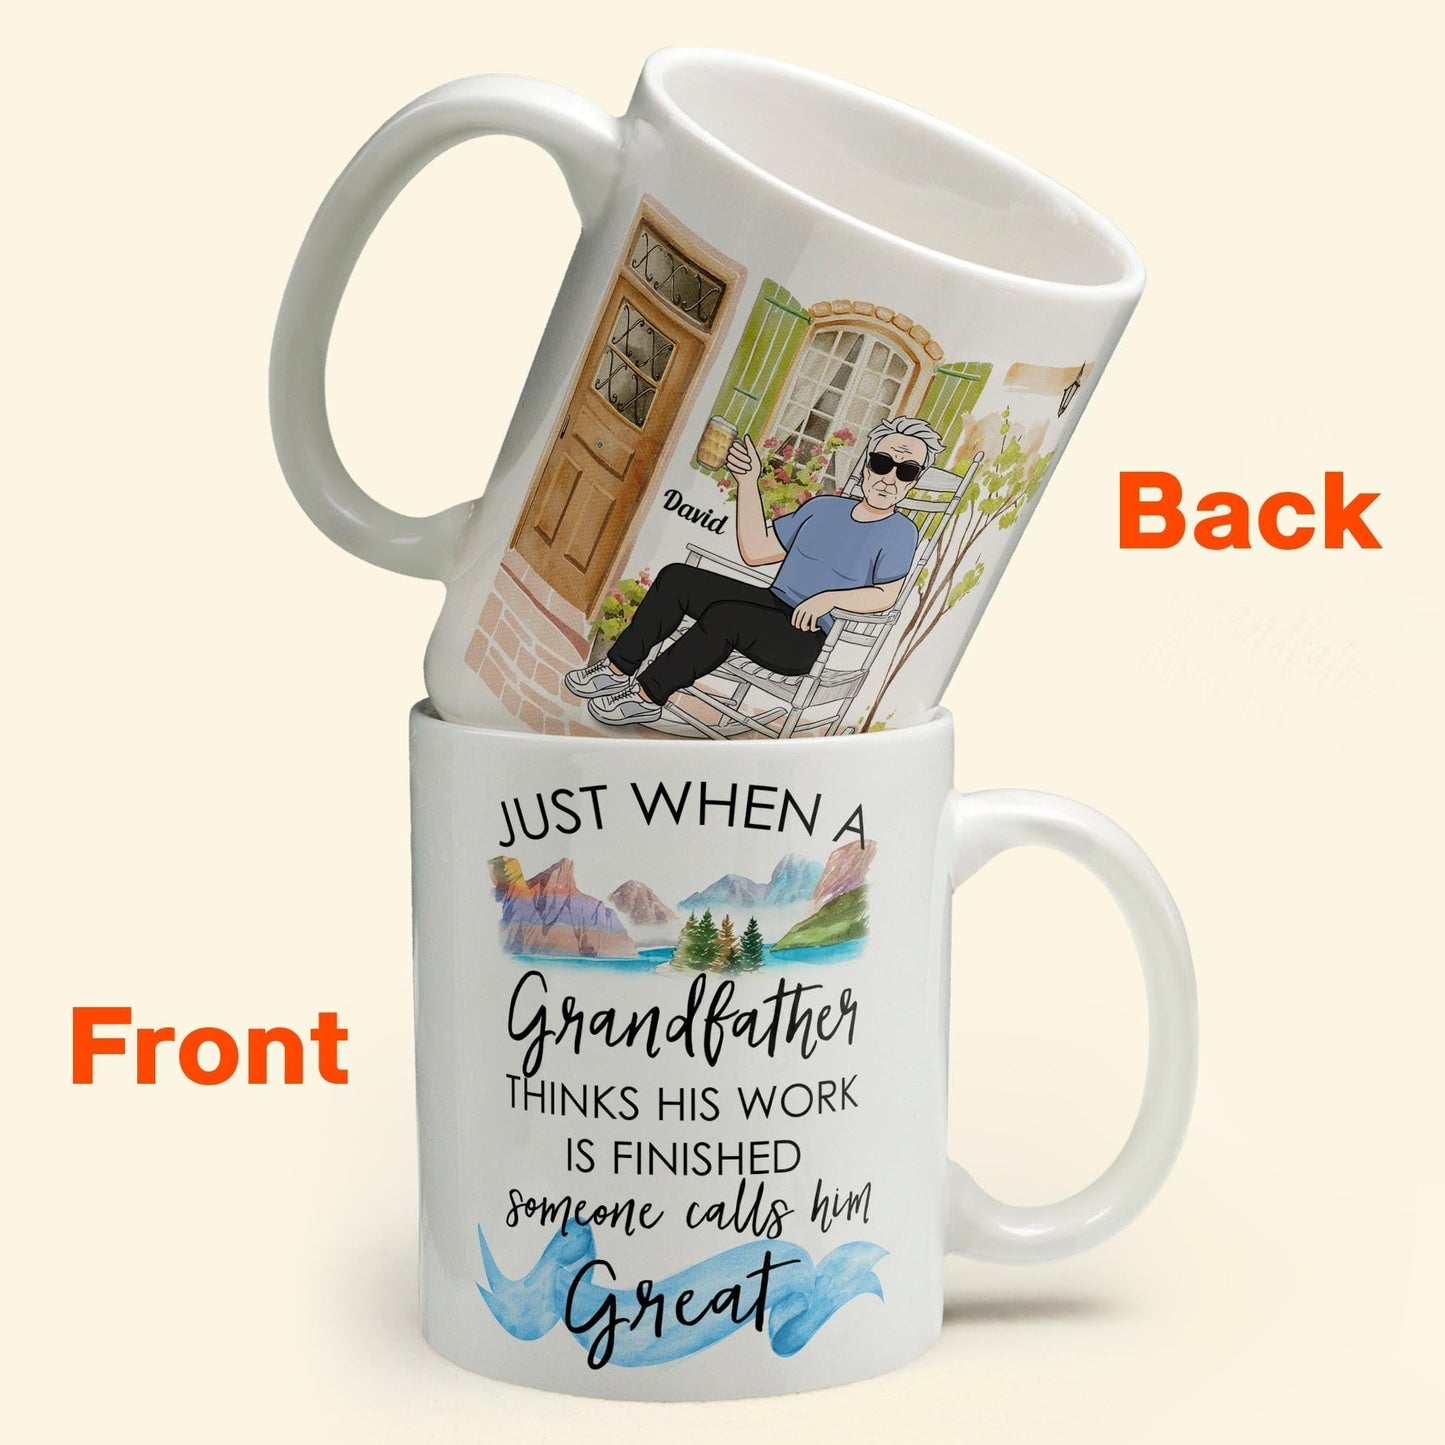 Great Grandparent - Personalized Mug - Pregnancy, Baby Announcement Gift For Great - Grandma, Grandma , Great Grandpa, Grandpa  - Baby Reveal To Family